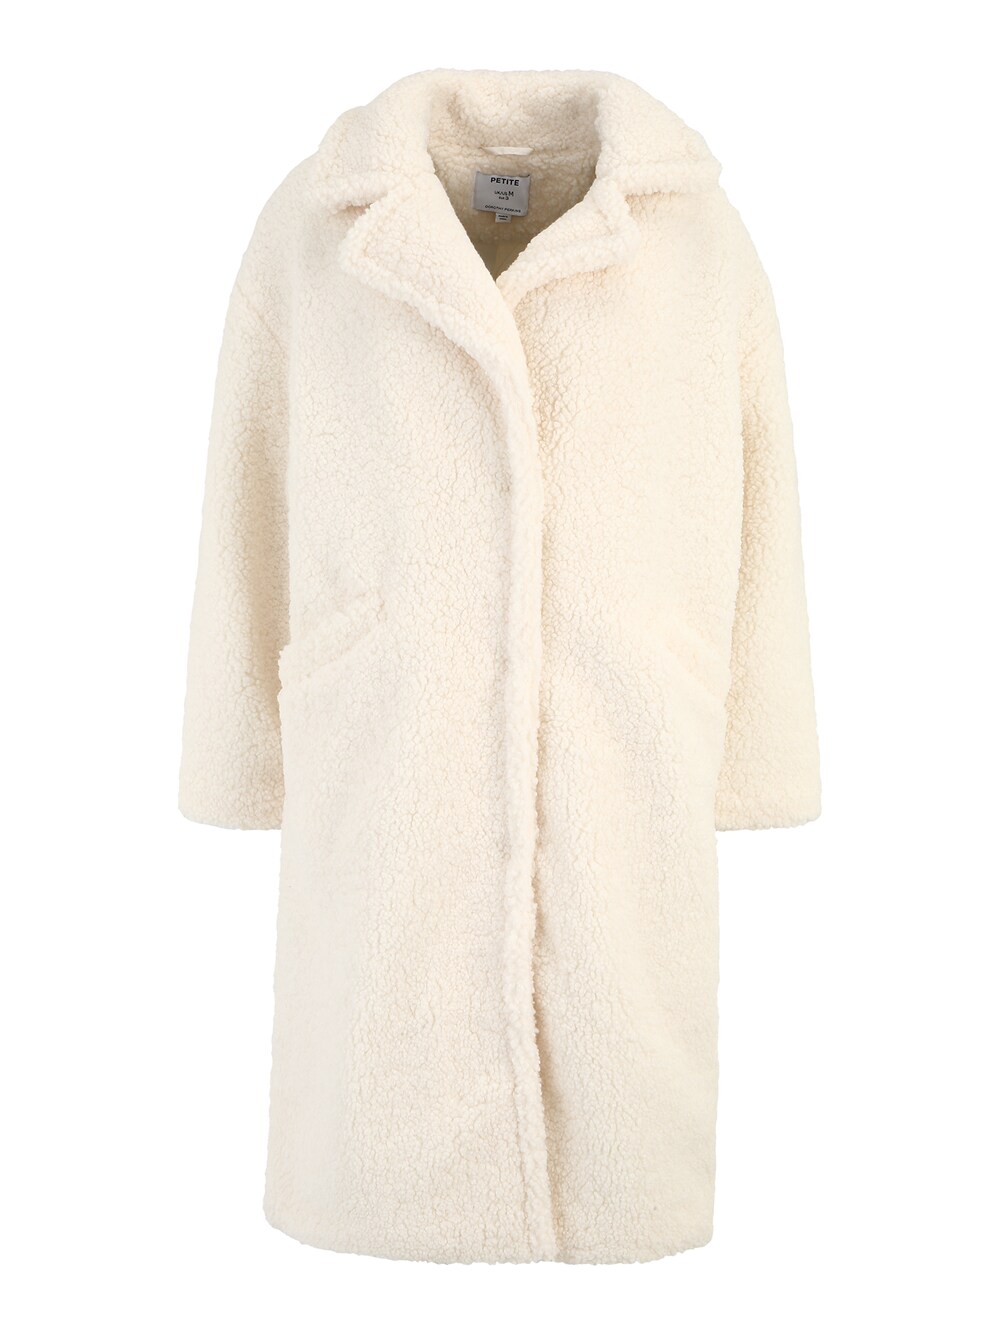 Межсезонное пальто Dorothy Perkins, крем межсезонное пальто dorothy perkins кэмел